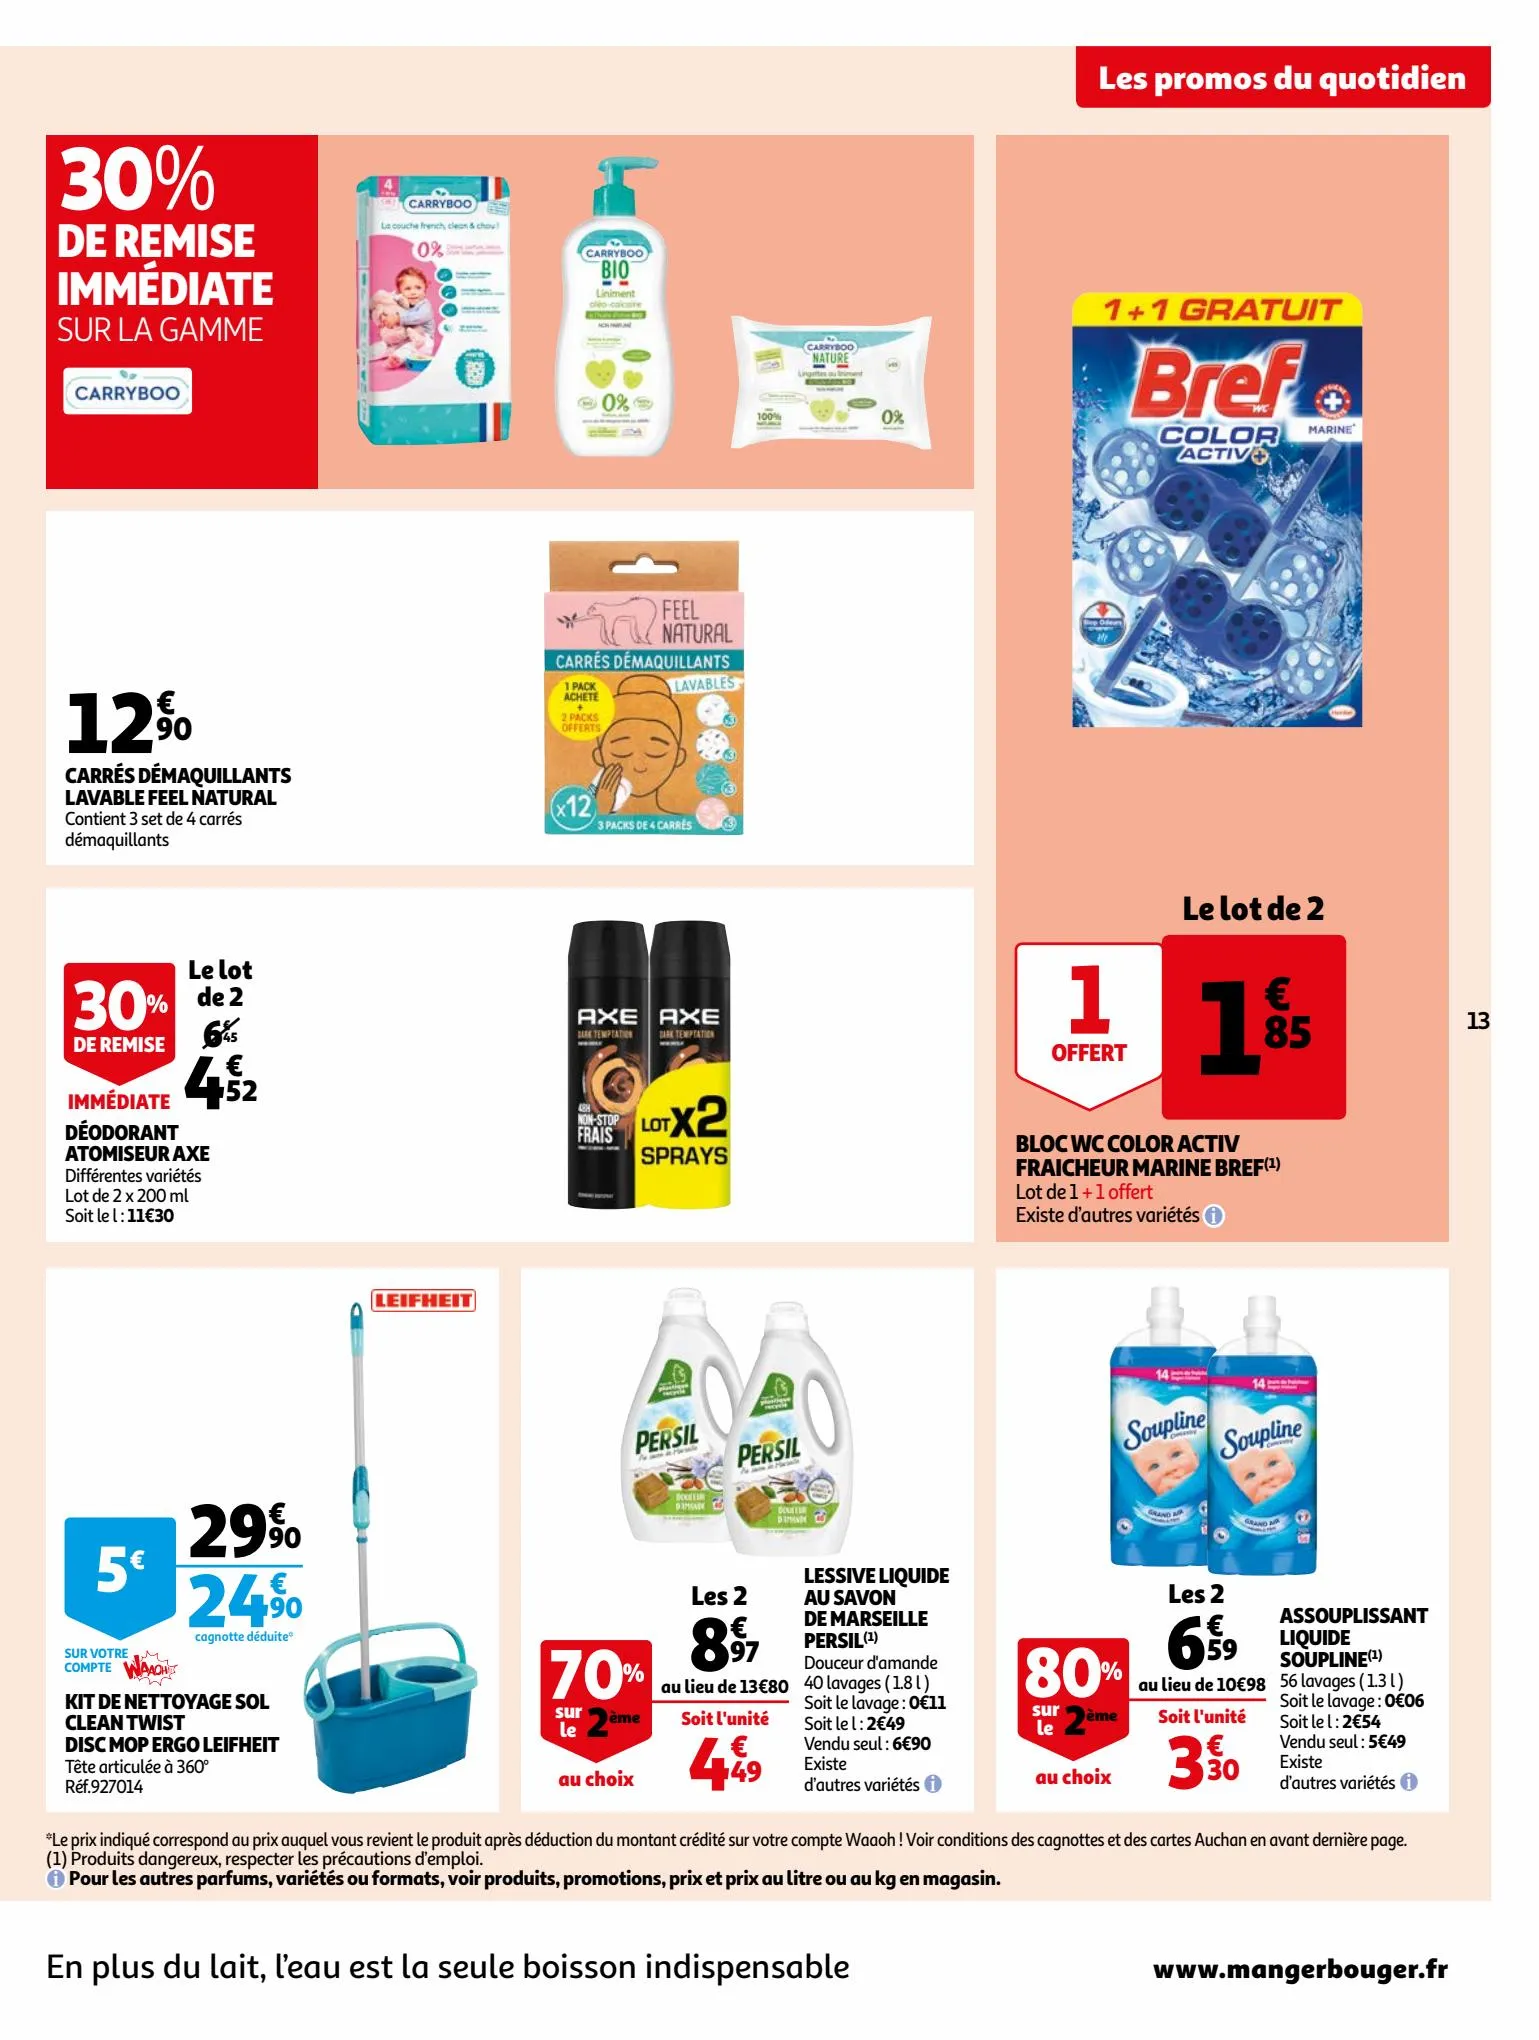 Catalogue Bio ou filière responsable, nos produits ont tout bon dans votre supermarché, page 00013